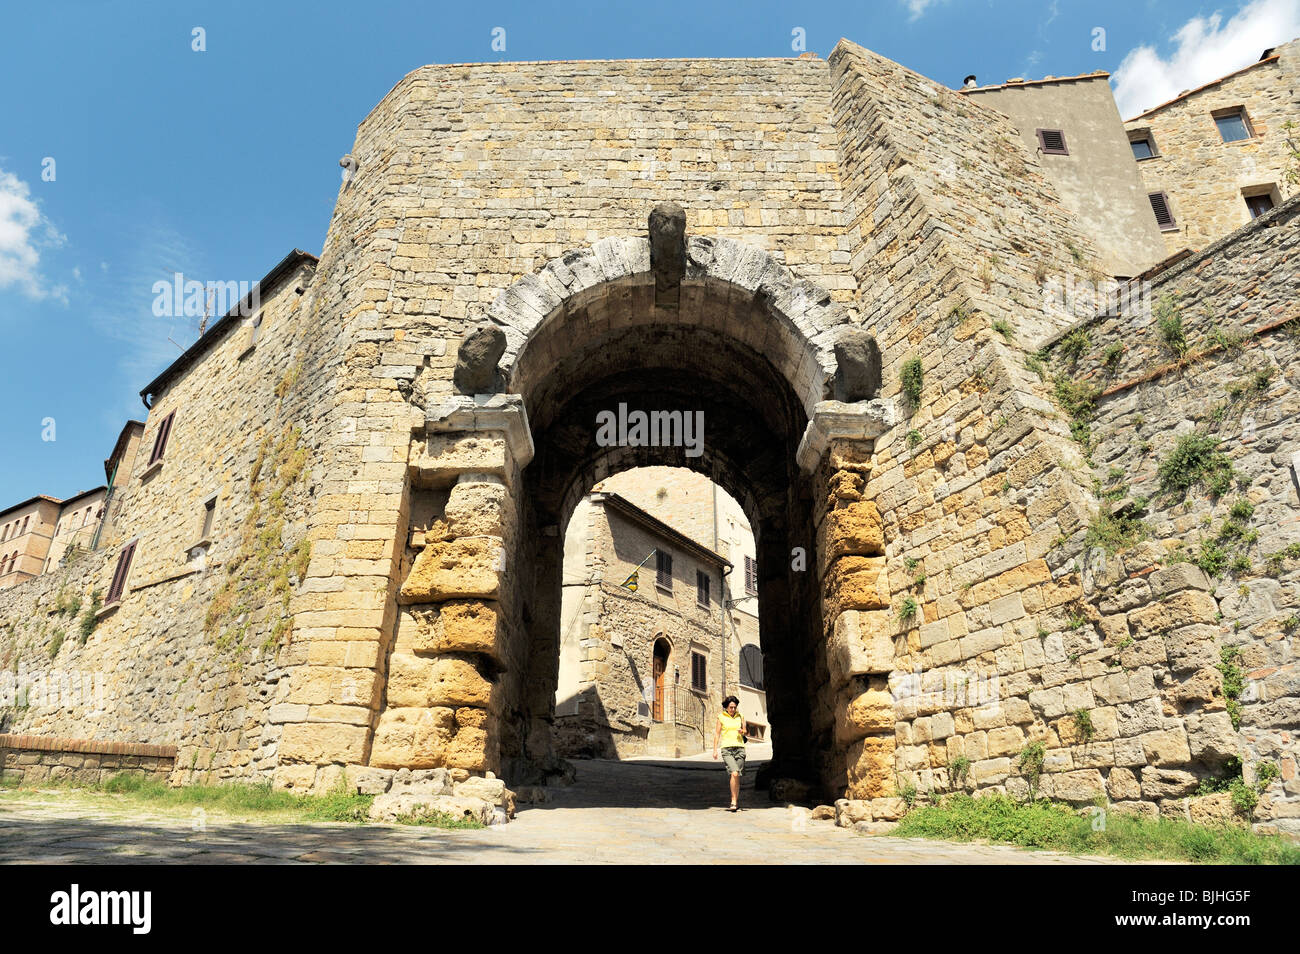 La antigua ciudad de Volterra, en la cima de la colina de la Toscana, Italia. La 2a.C.. Porta dell'Arco Gateway a través de la etrusca período paredes Foto de stock